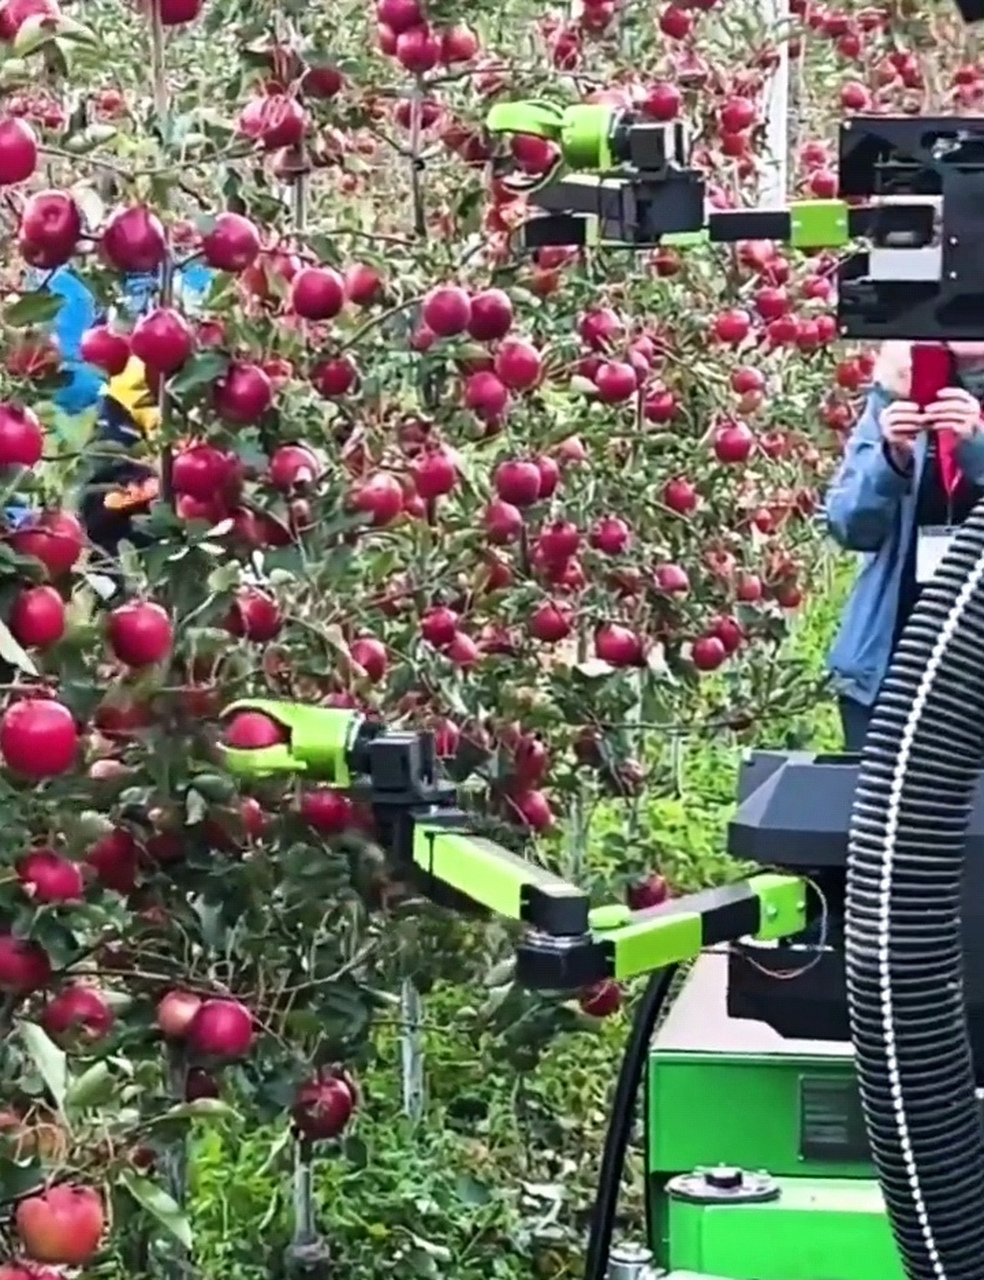 现在的科技真是发达呀,连摘苹果都用上了机器人.